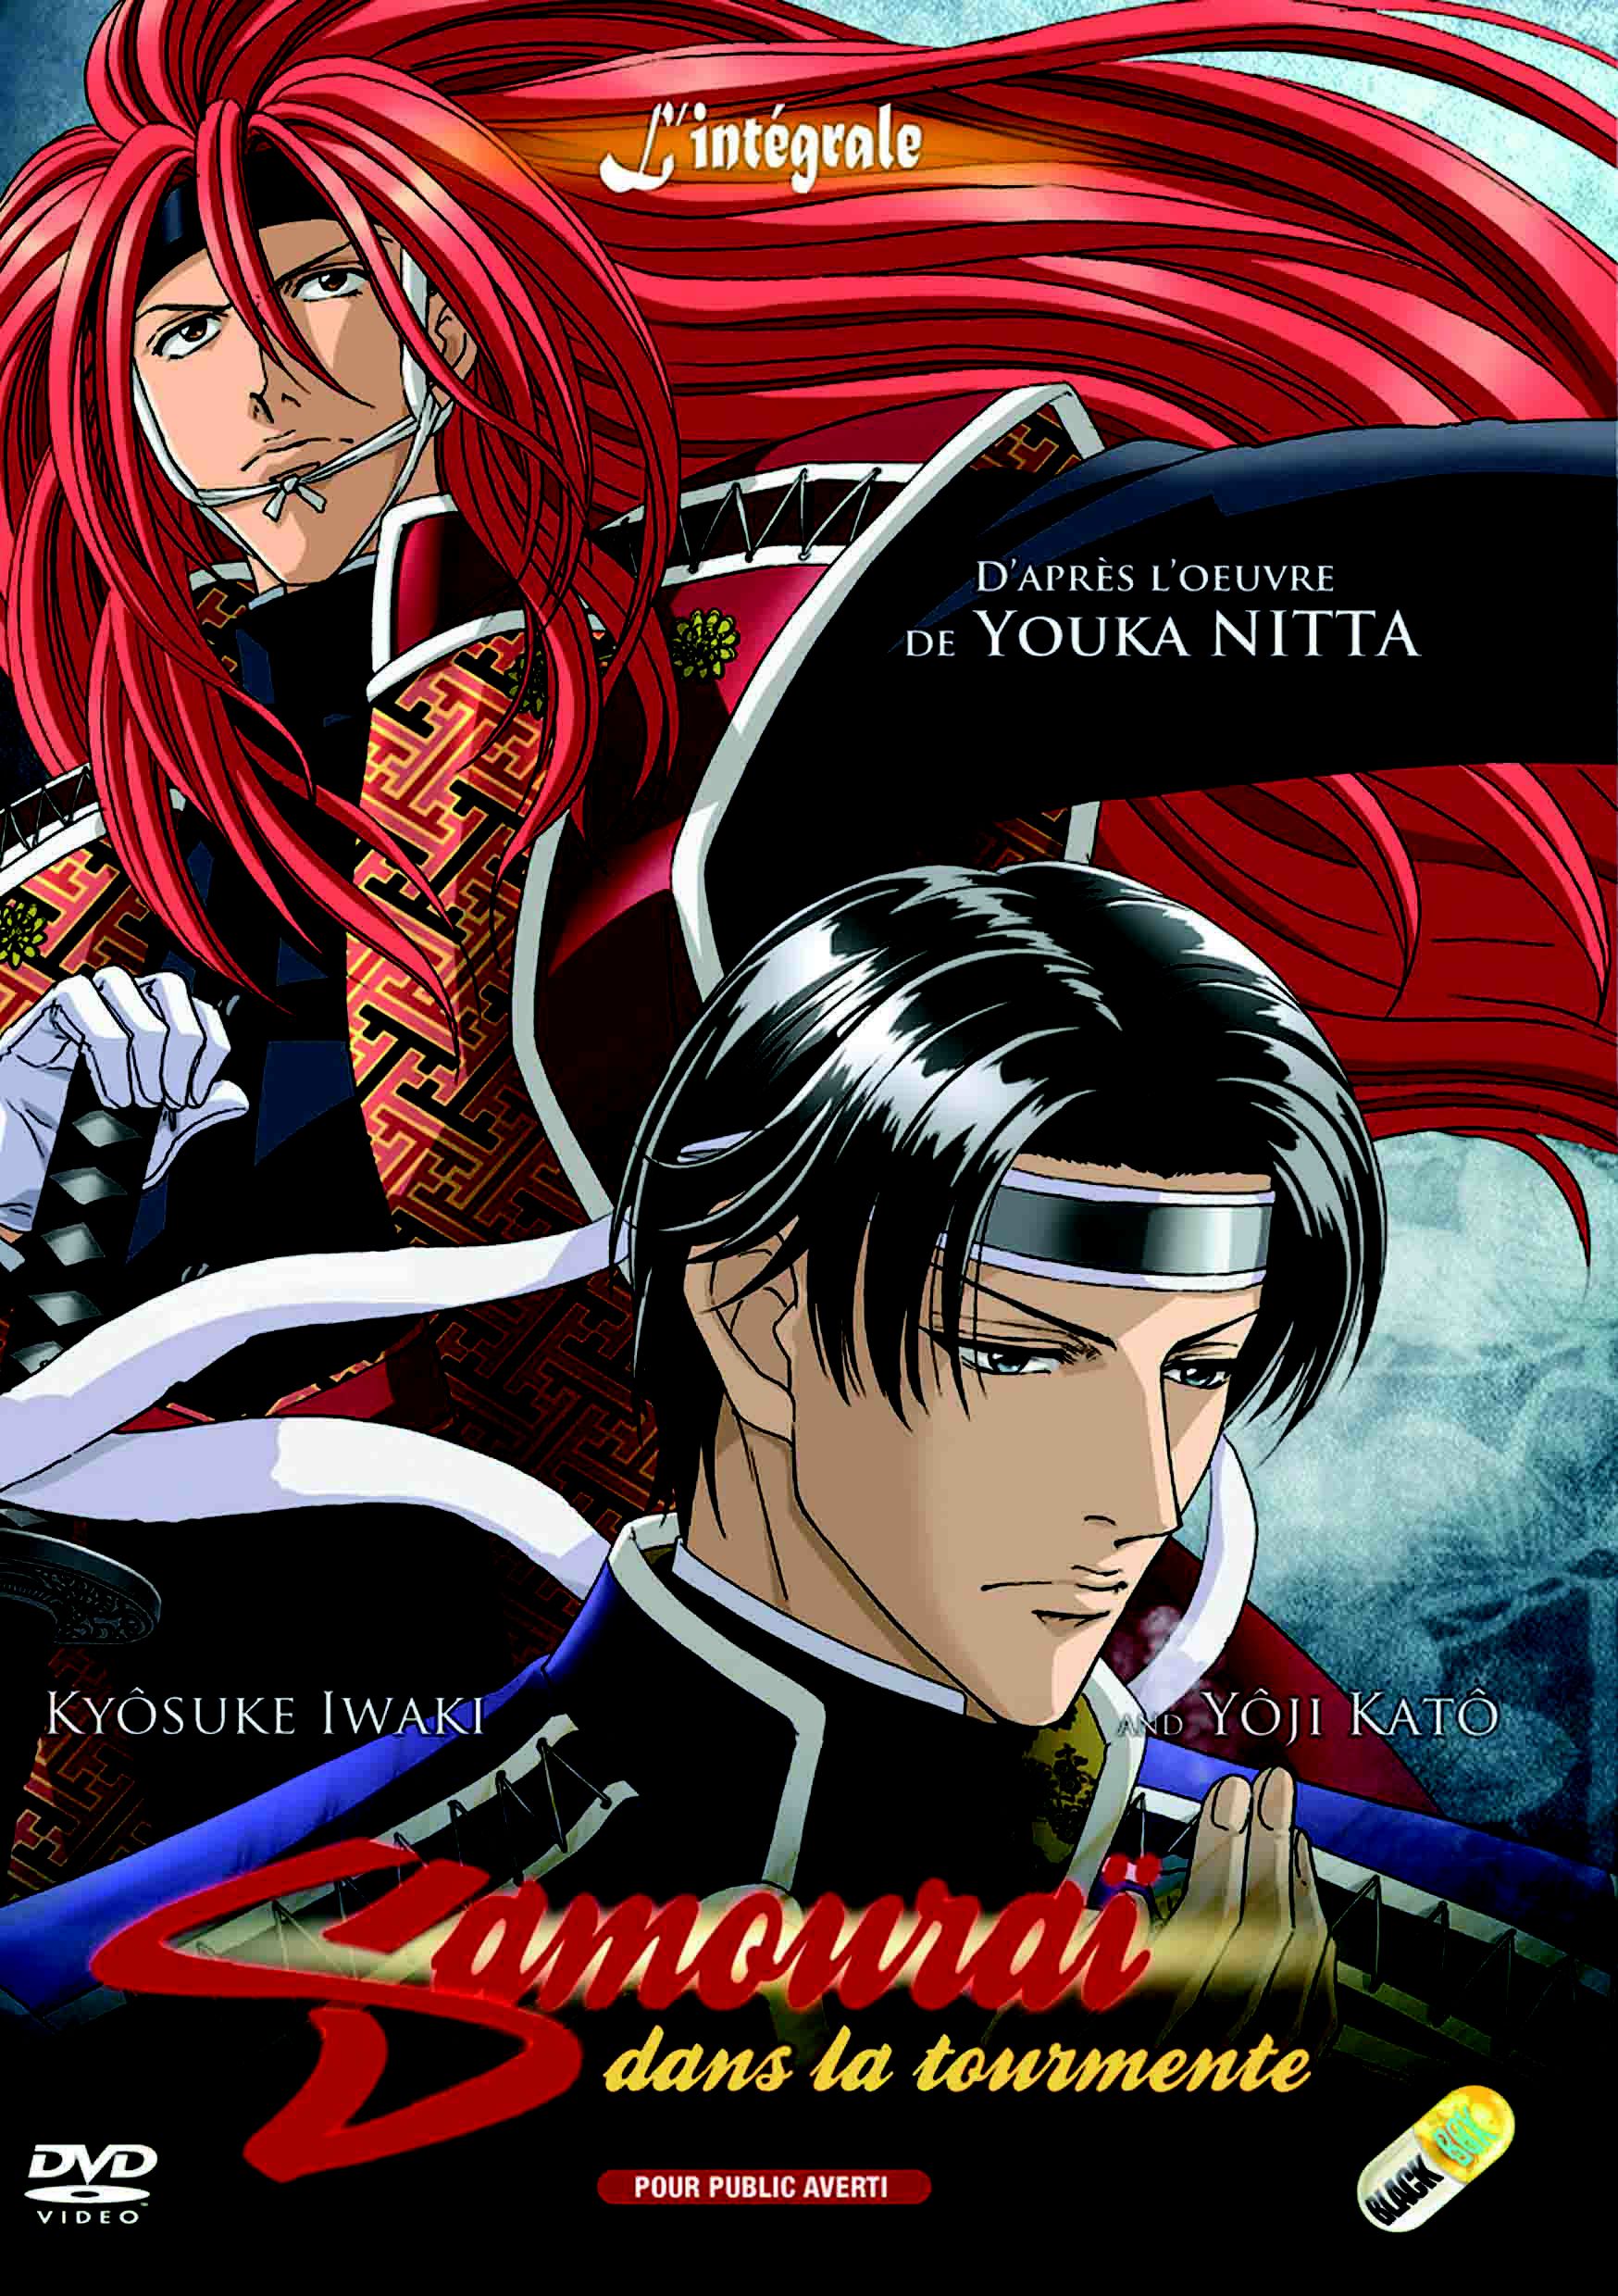 Samouraï dans la Tourmente - Anime (OAV) (2007) streaming VF gratuit complet